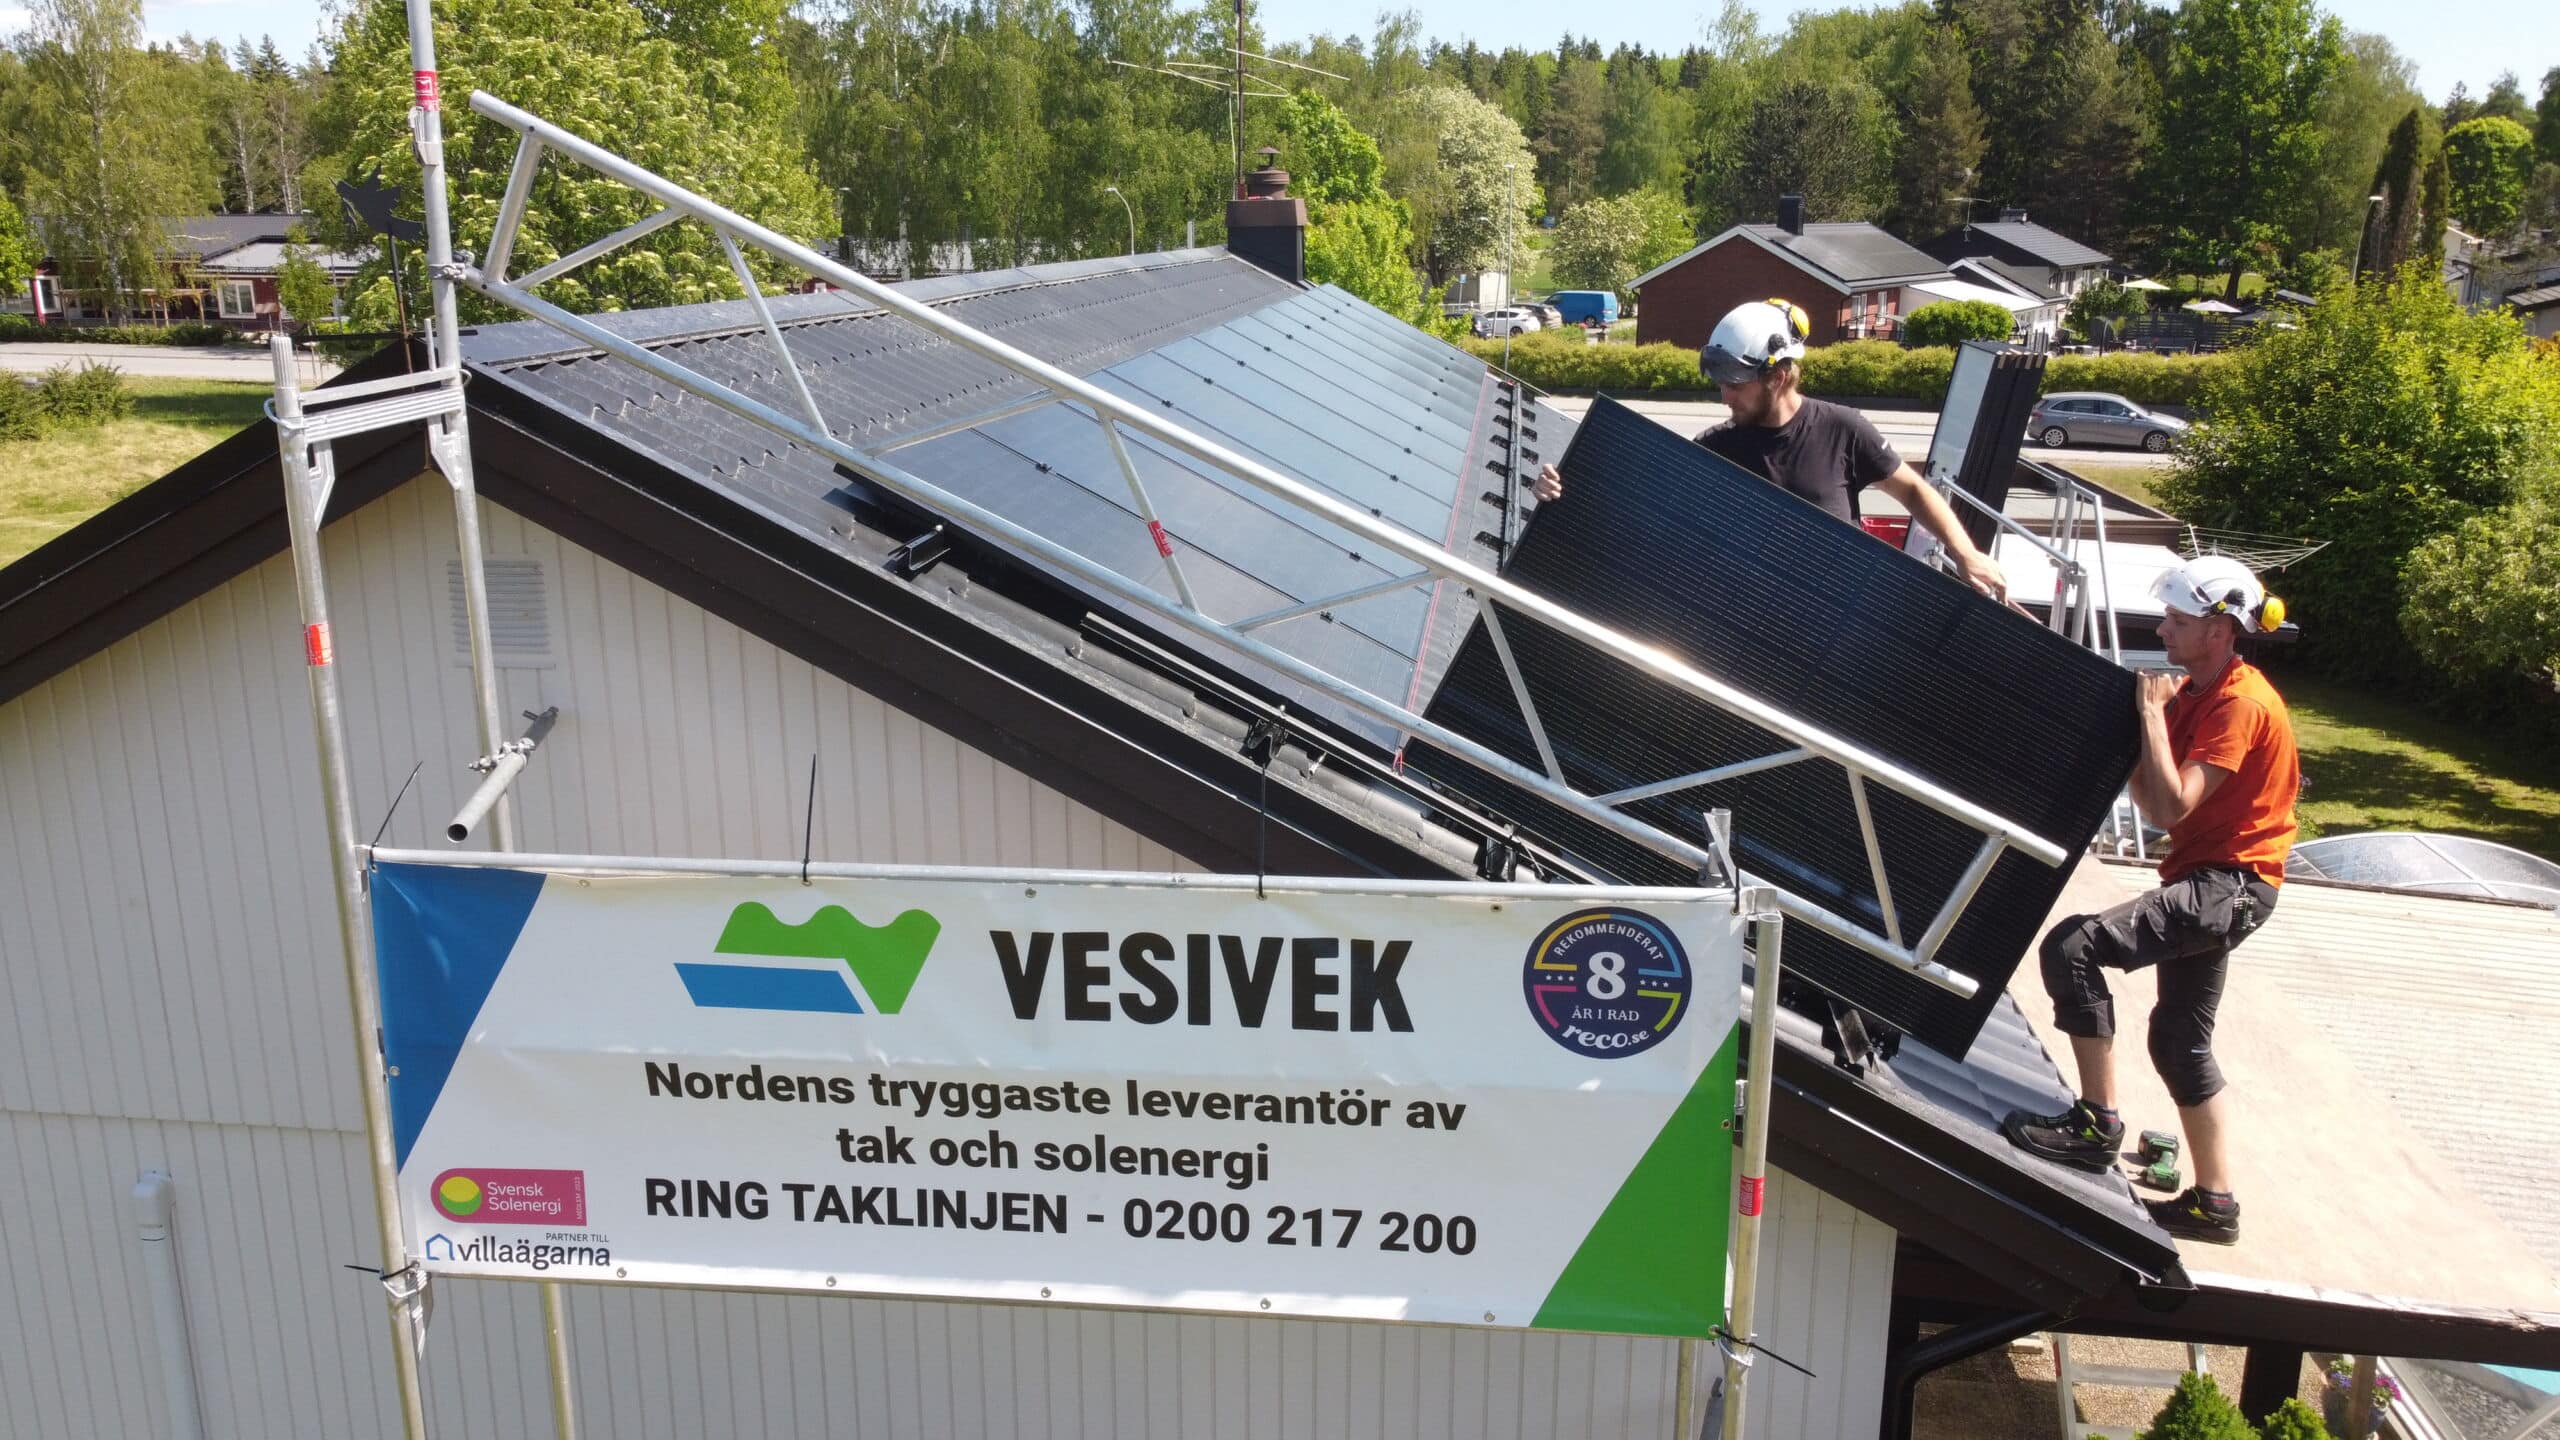 Svarta solceller på tak, banderoll i förgrunden på ställning med Vesiveks logga. 2 st solcellsinstallatörer på bild